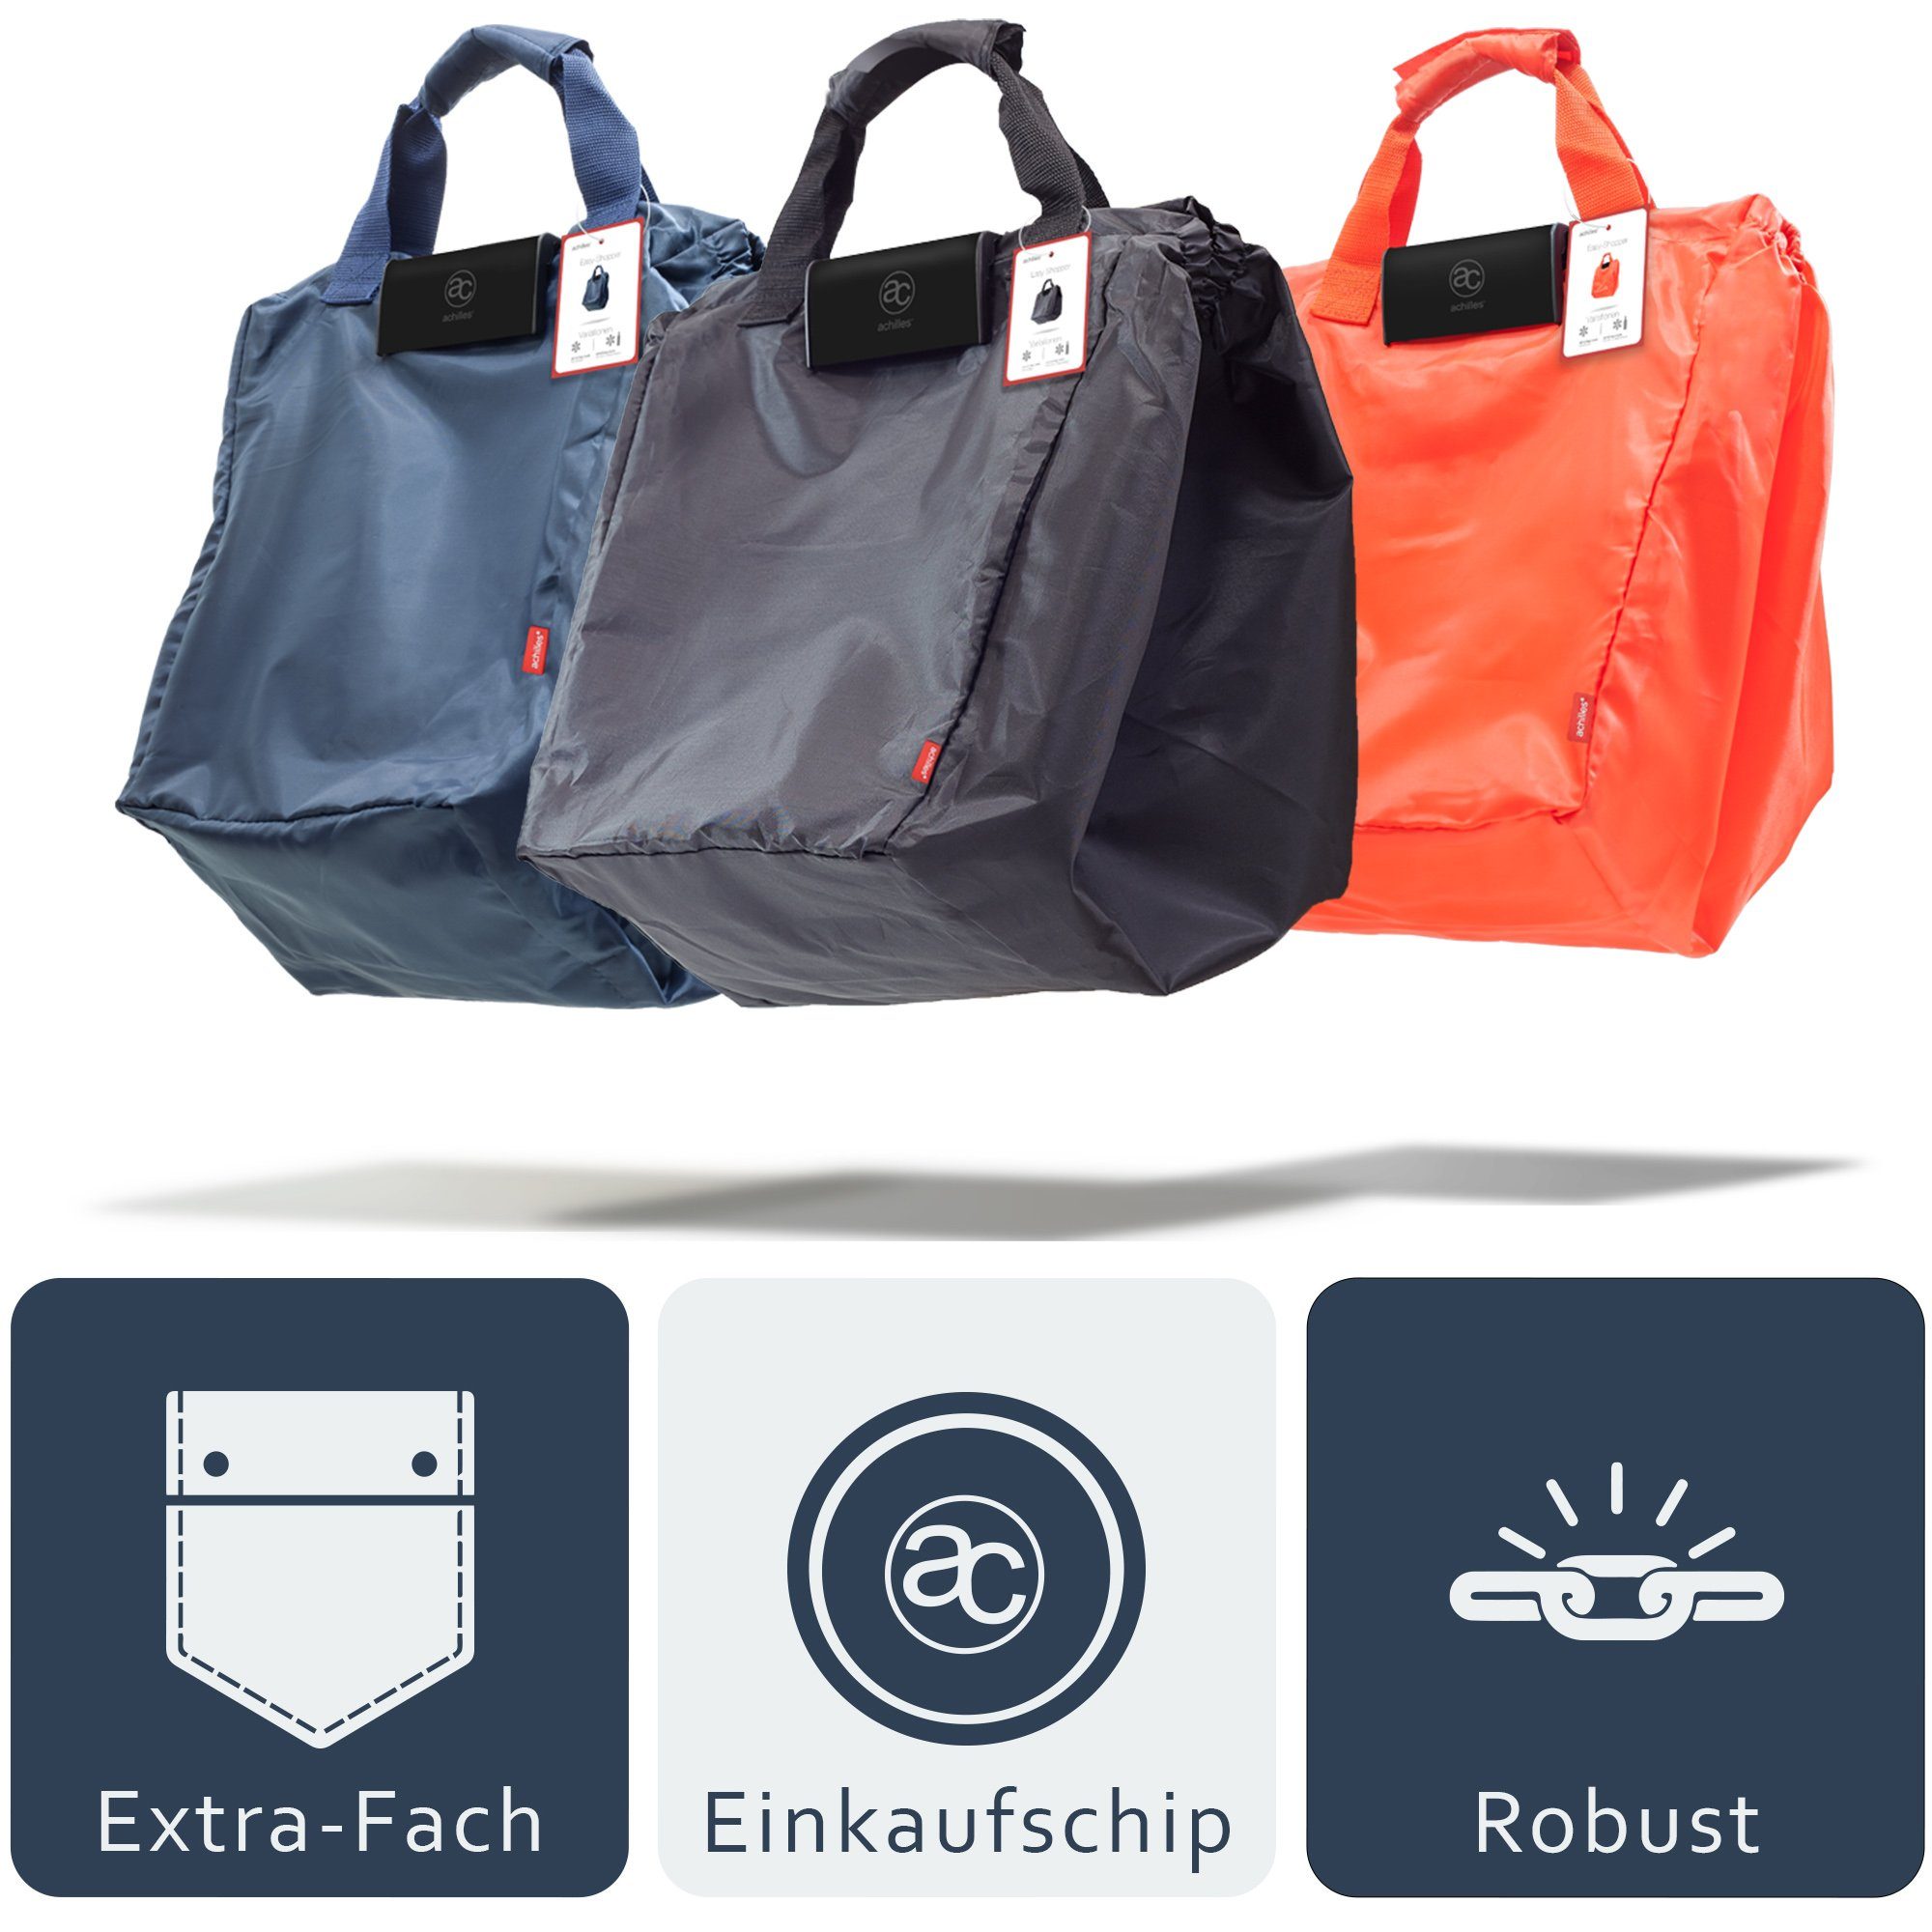 Faltbare Einkaufswagentasche Einkaufsshopper Easy-Shopper achilles 40 rot "Combi" Einkaufstasche, l